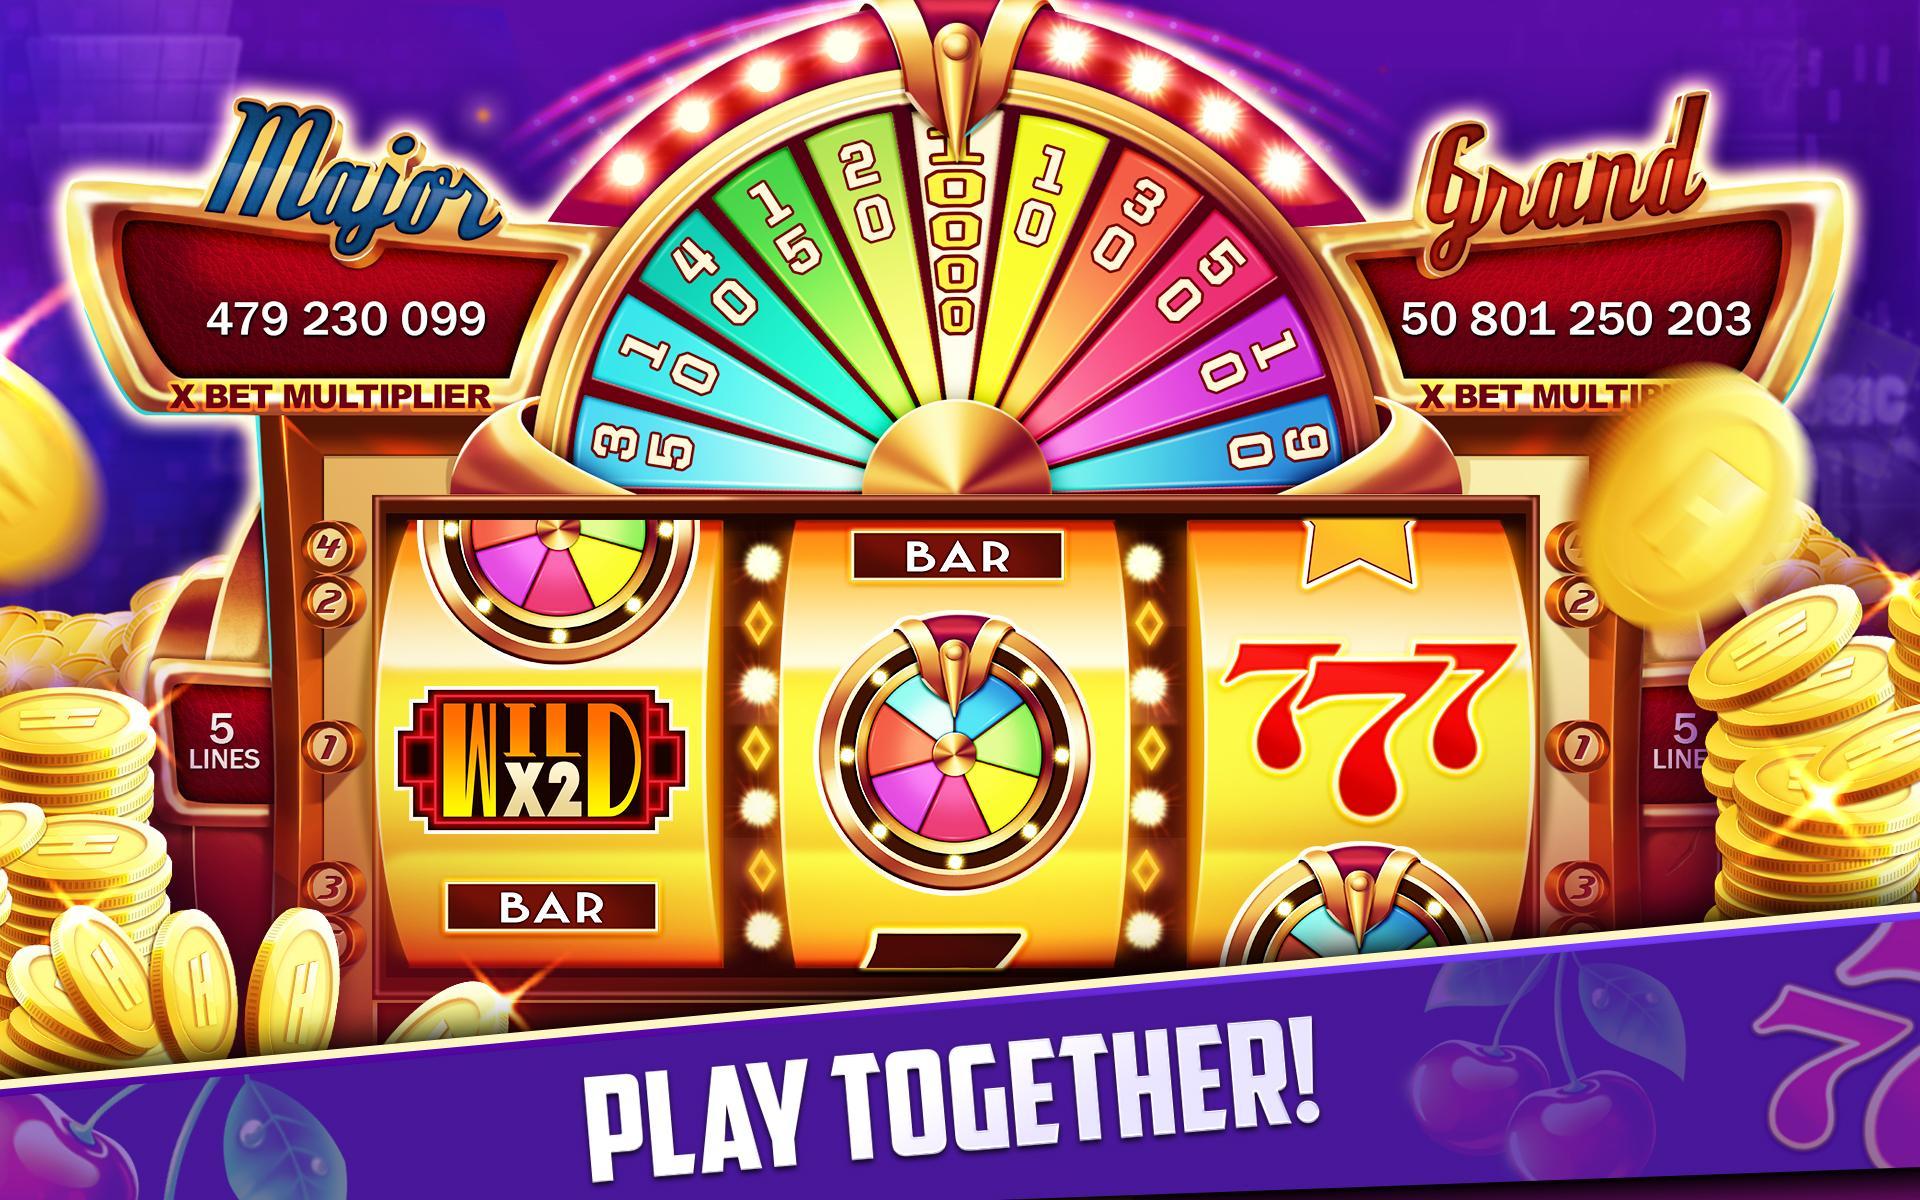 Stars Slots Casino - Vegas Slot Machines 1.0.1366 Screenshot 22